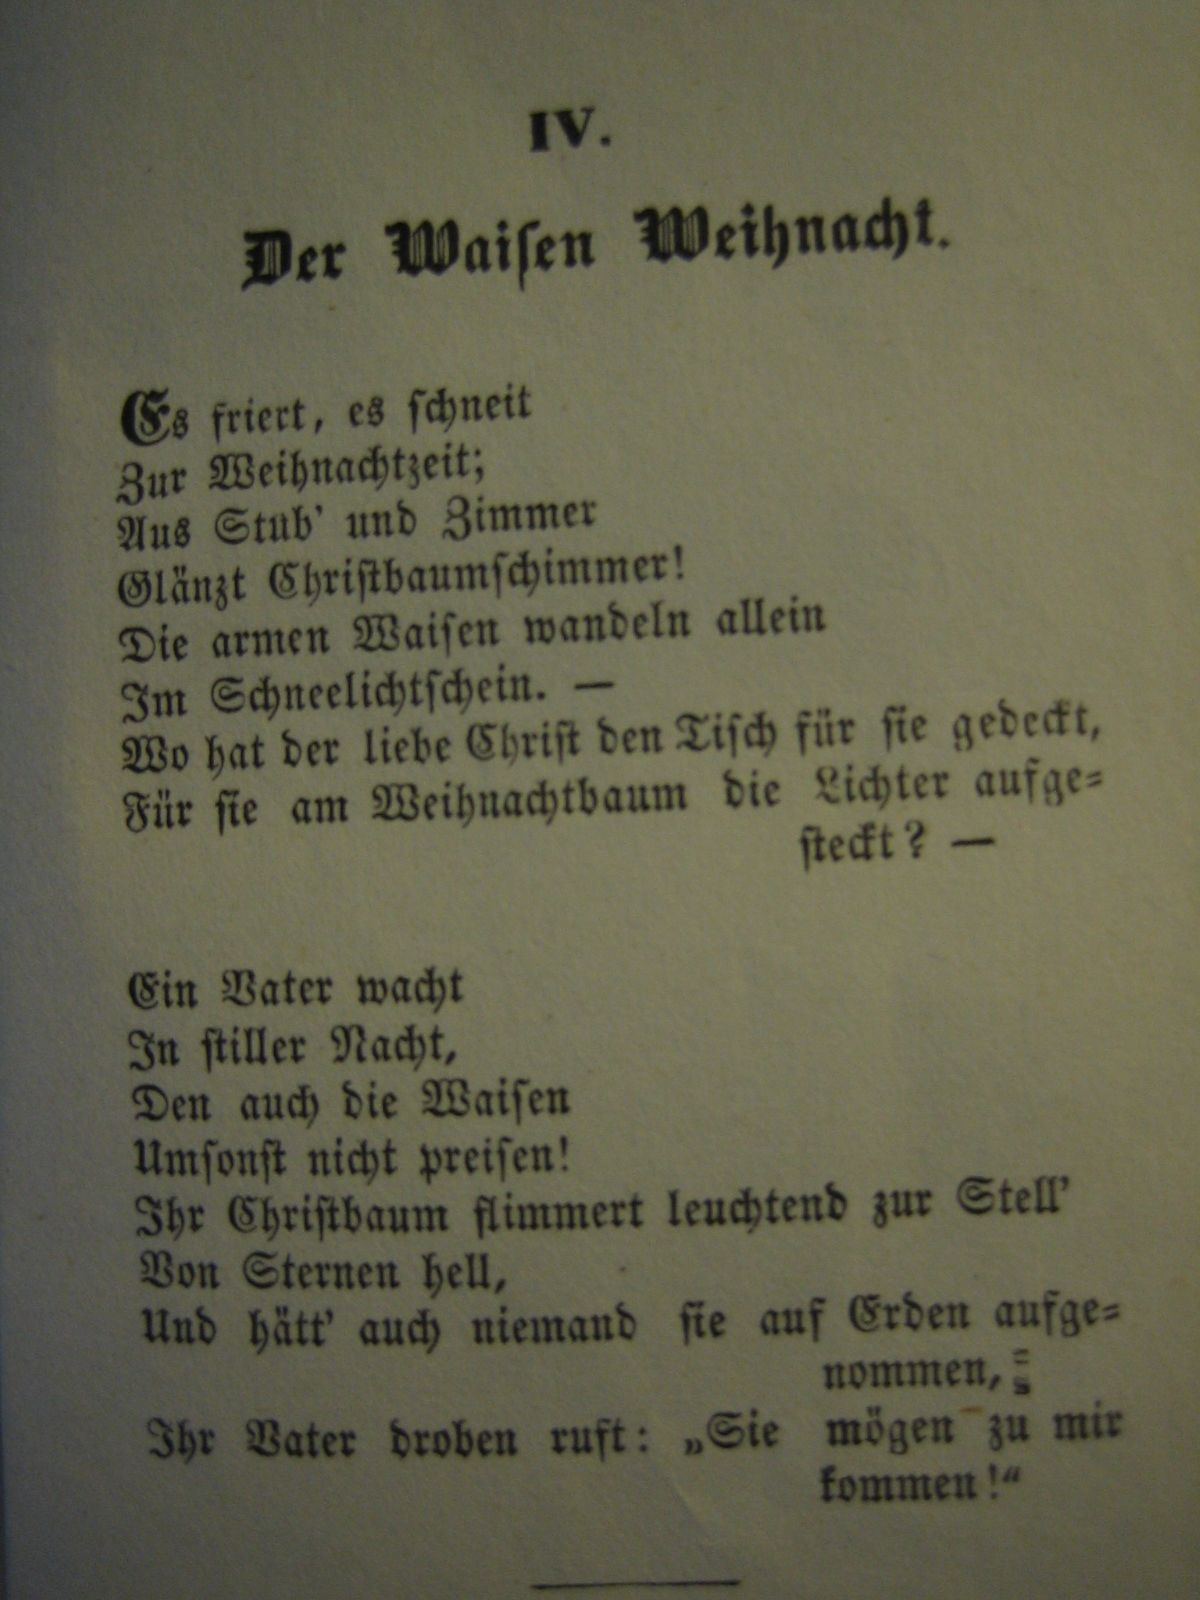 Ulla hahn bekanntschaft gedicht